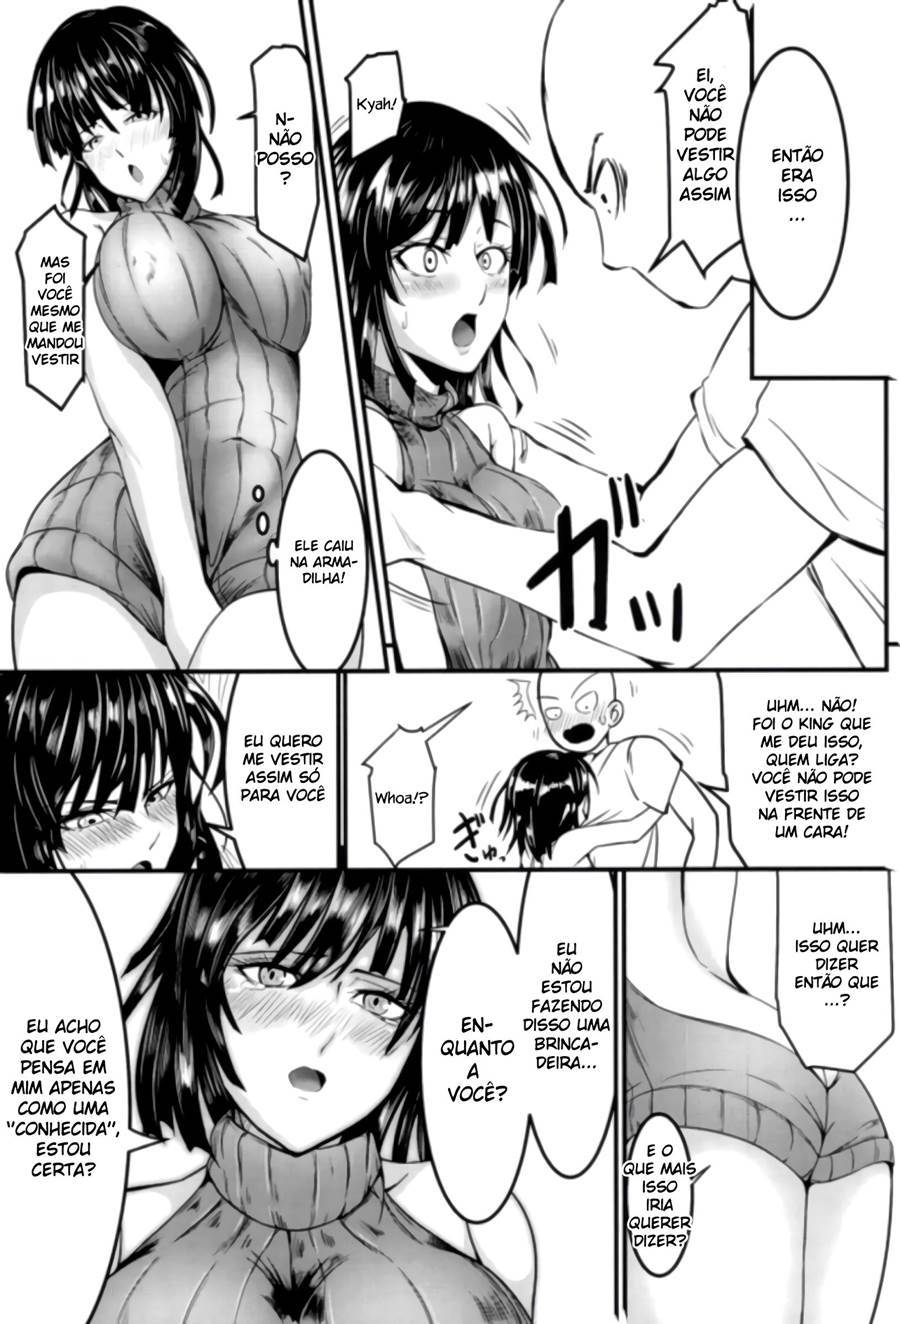 Saitama penetra virgindade de fubuki (6)